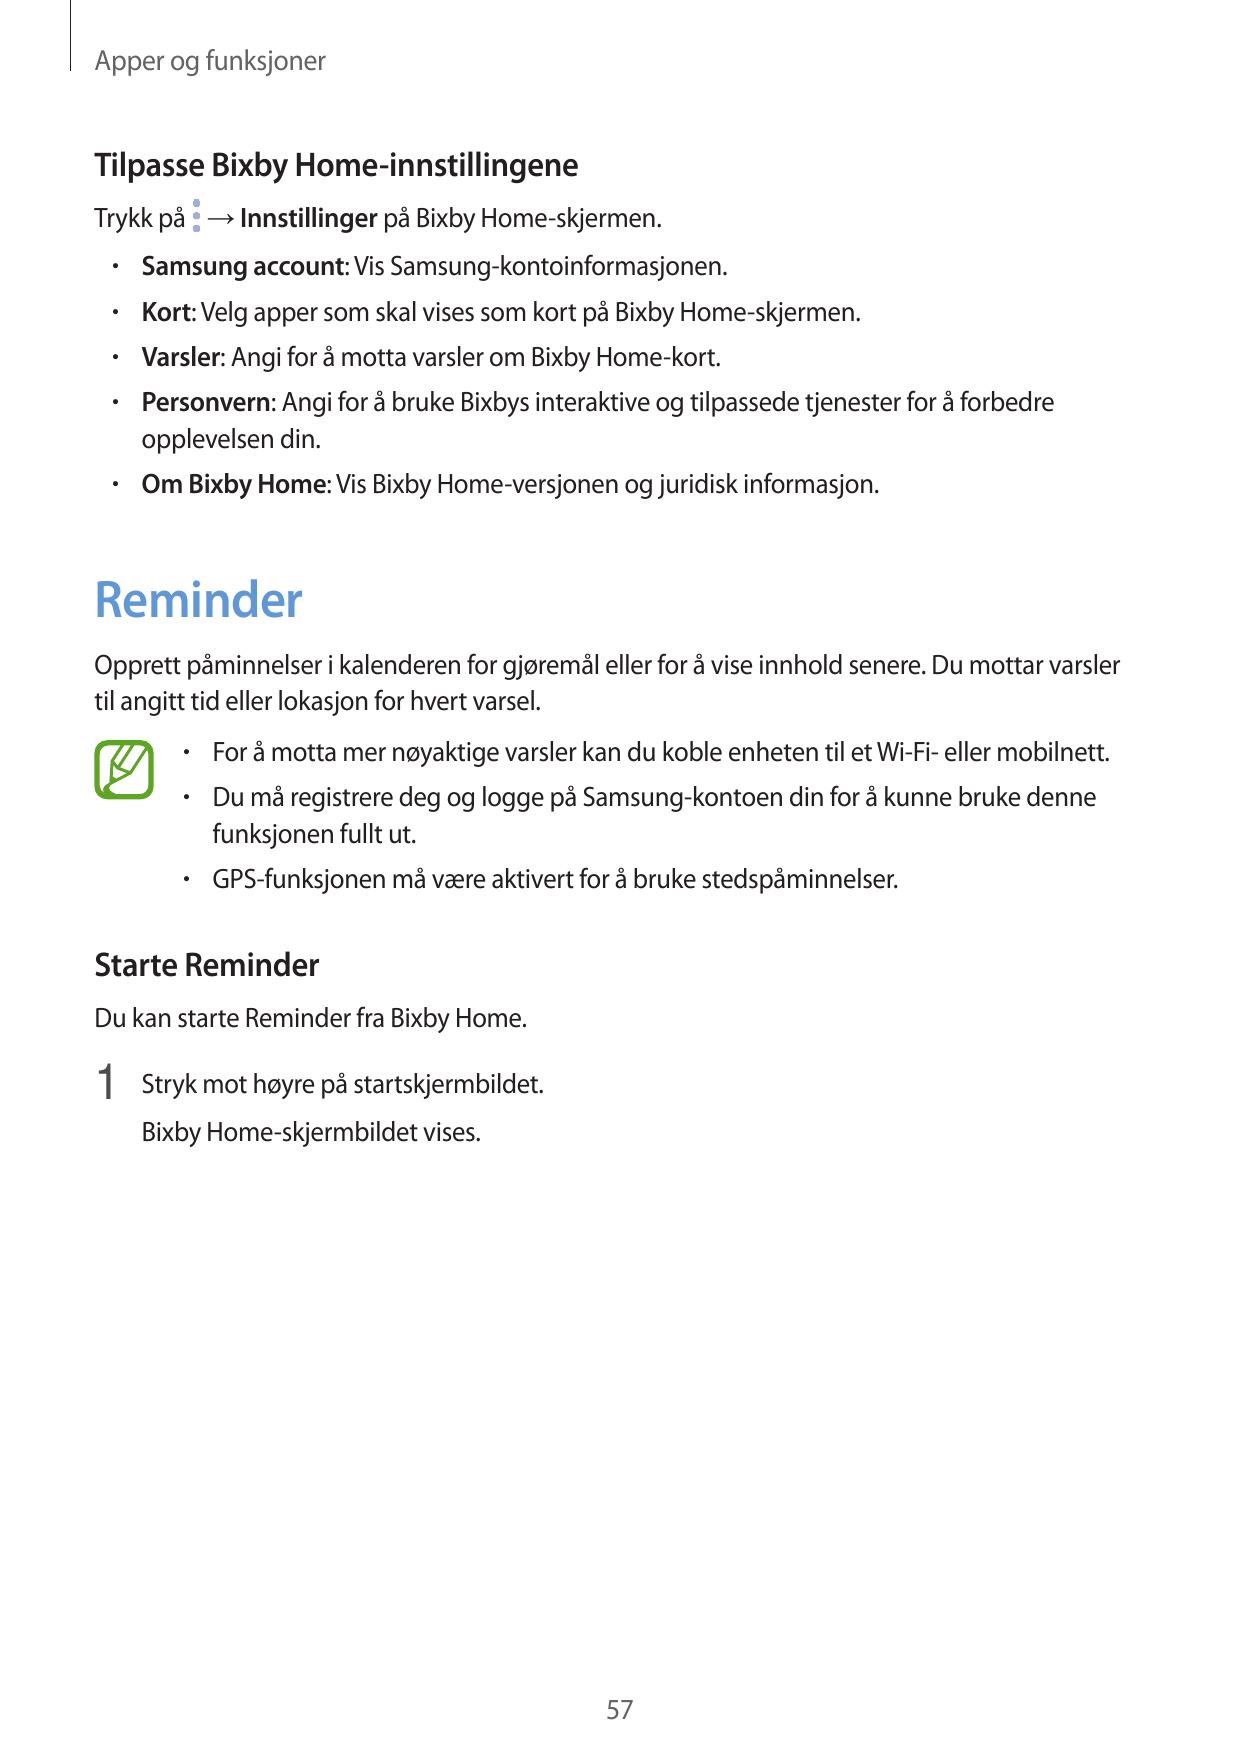 Apper og funksjonerTilpasse Bixby Home-innstillingeneTrykk på → Innstillinger på Bixby Home-skjermen.• Samsung account: Vis Sams